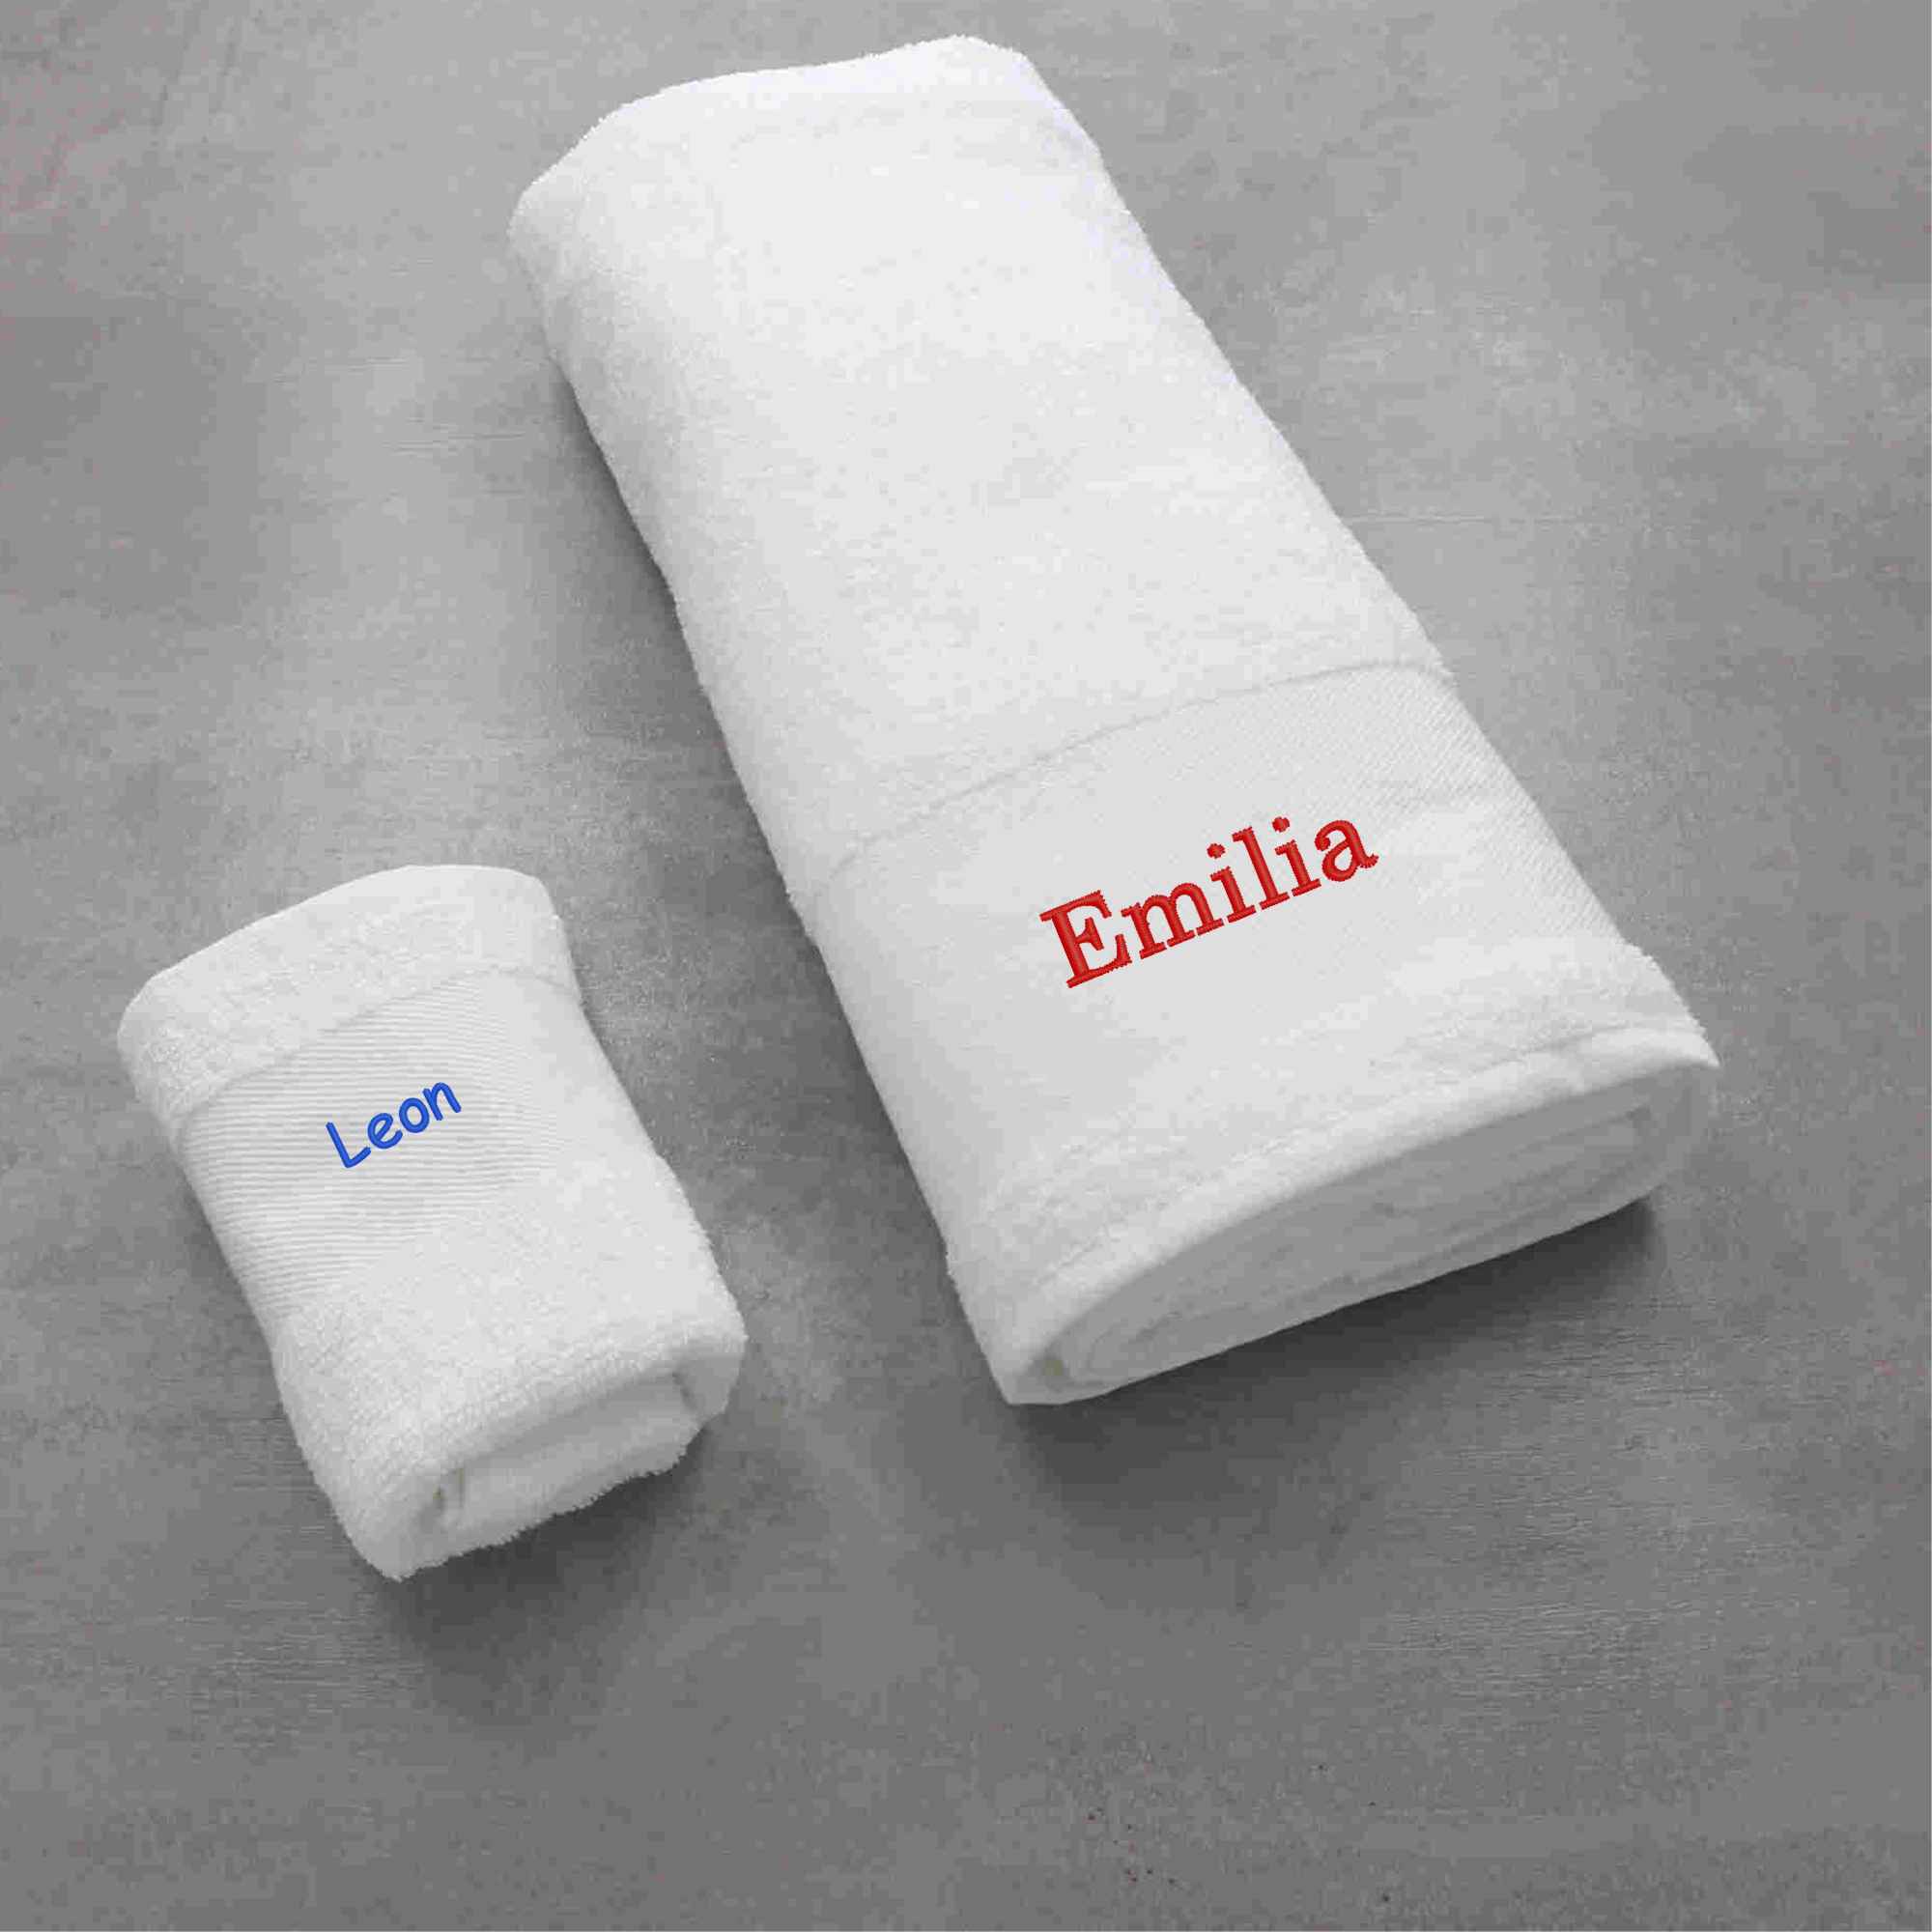 Große und Kleine Handtücher in Weiß zum Baden gehen geeignet mit Personalisierung durch Namen oder Initialien gestickt